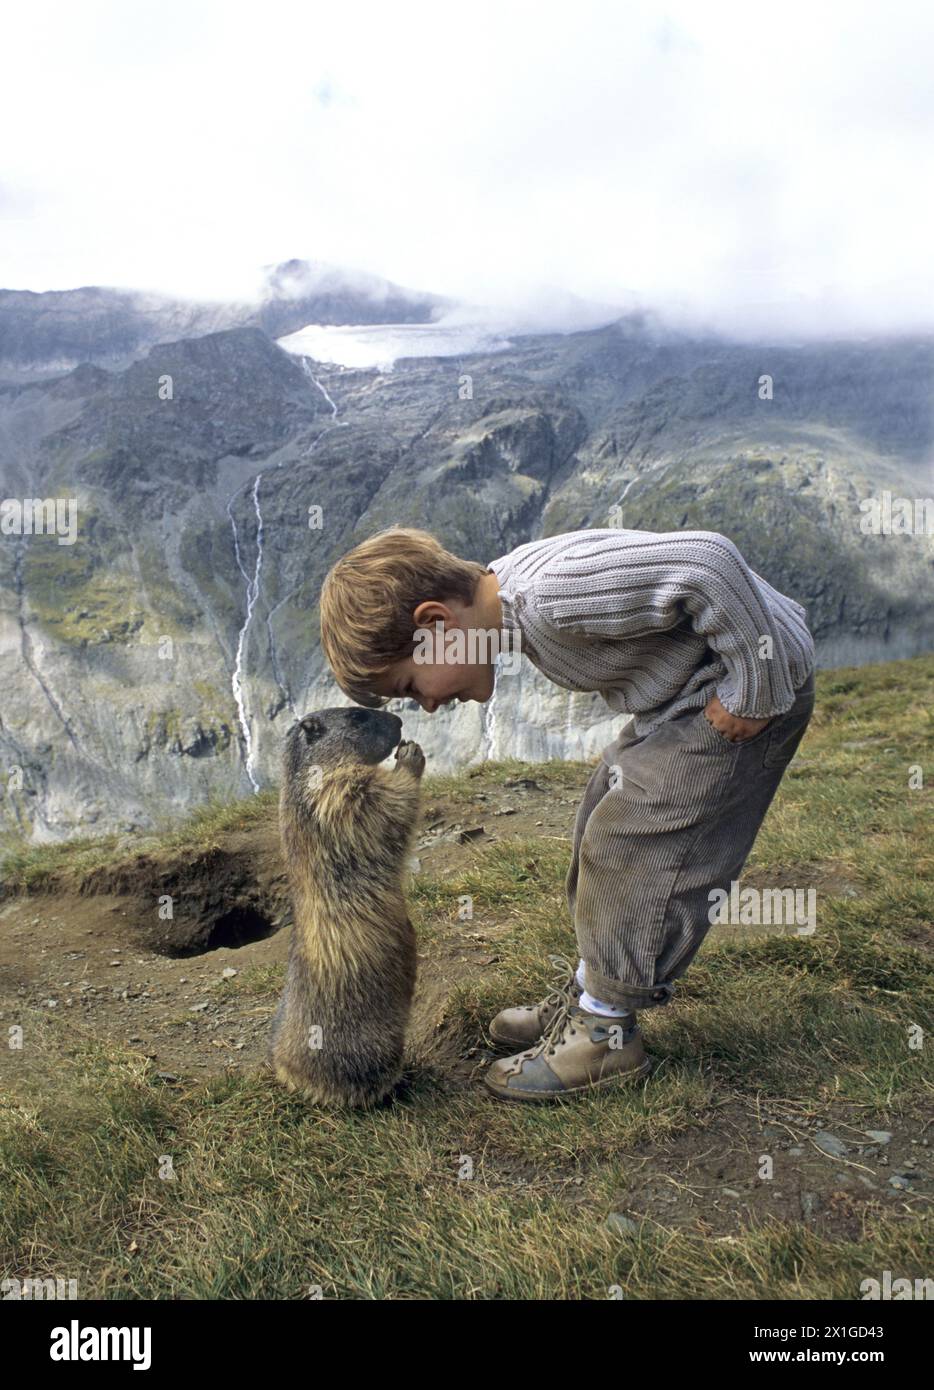 Innsbruck - caution spéciale : Matteo Walch, écolier de 8 ans, avec un groupe de marmottes dans les Alpes autrichiennes. PICTURE : Matteo Walch avec marmotte - 20110818 PD6097 - Rechteinfo : droits gérés (RM) Banque D'Images